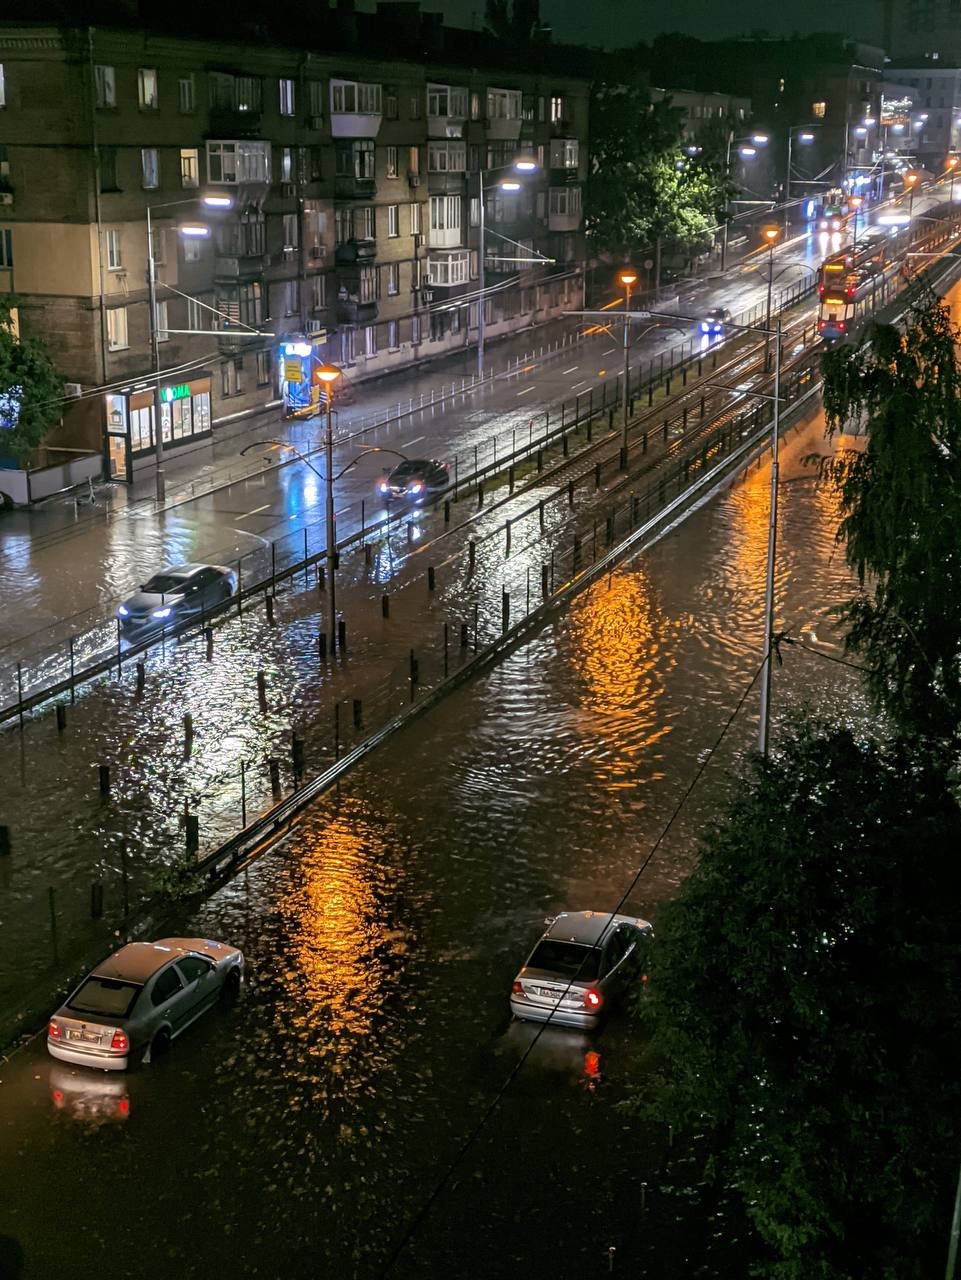 Непогода "обнажила" проблемы Киева - затопленные квартиры, забитые ливневки или их отсутствие